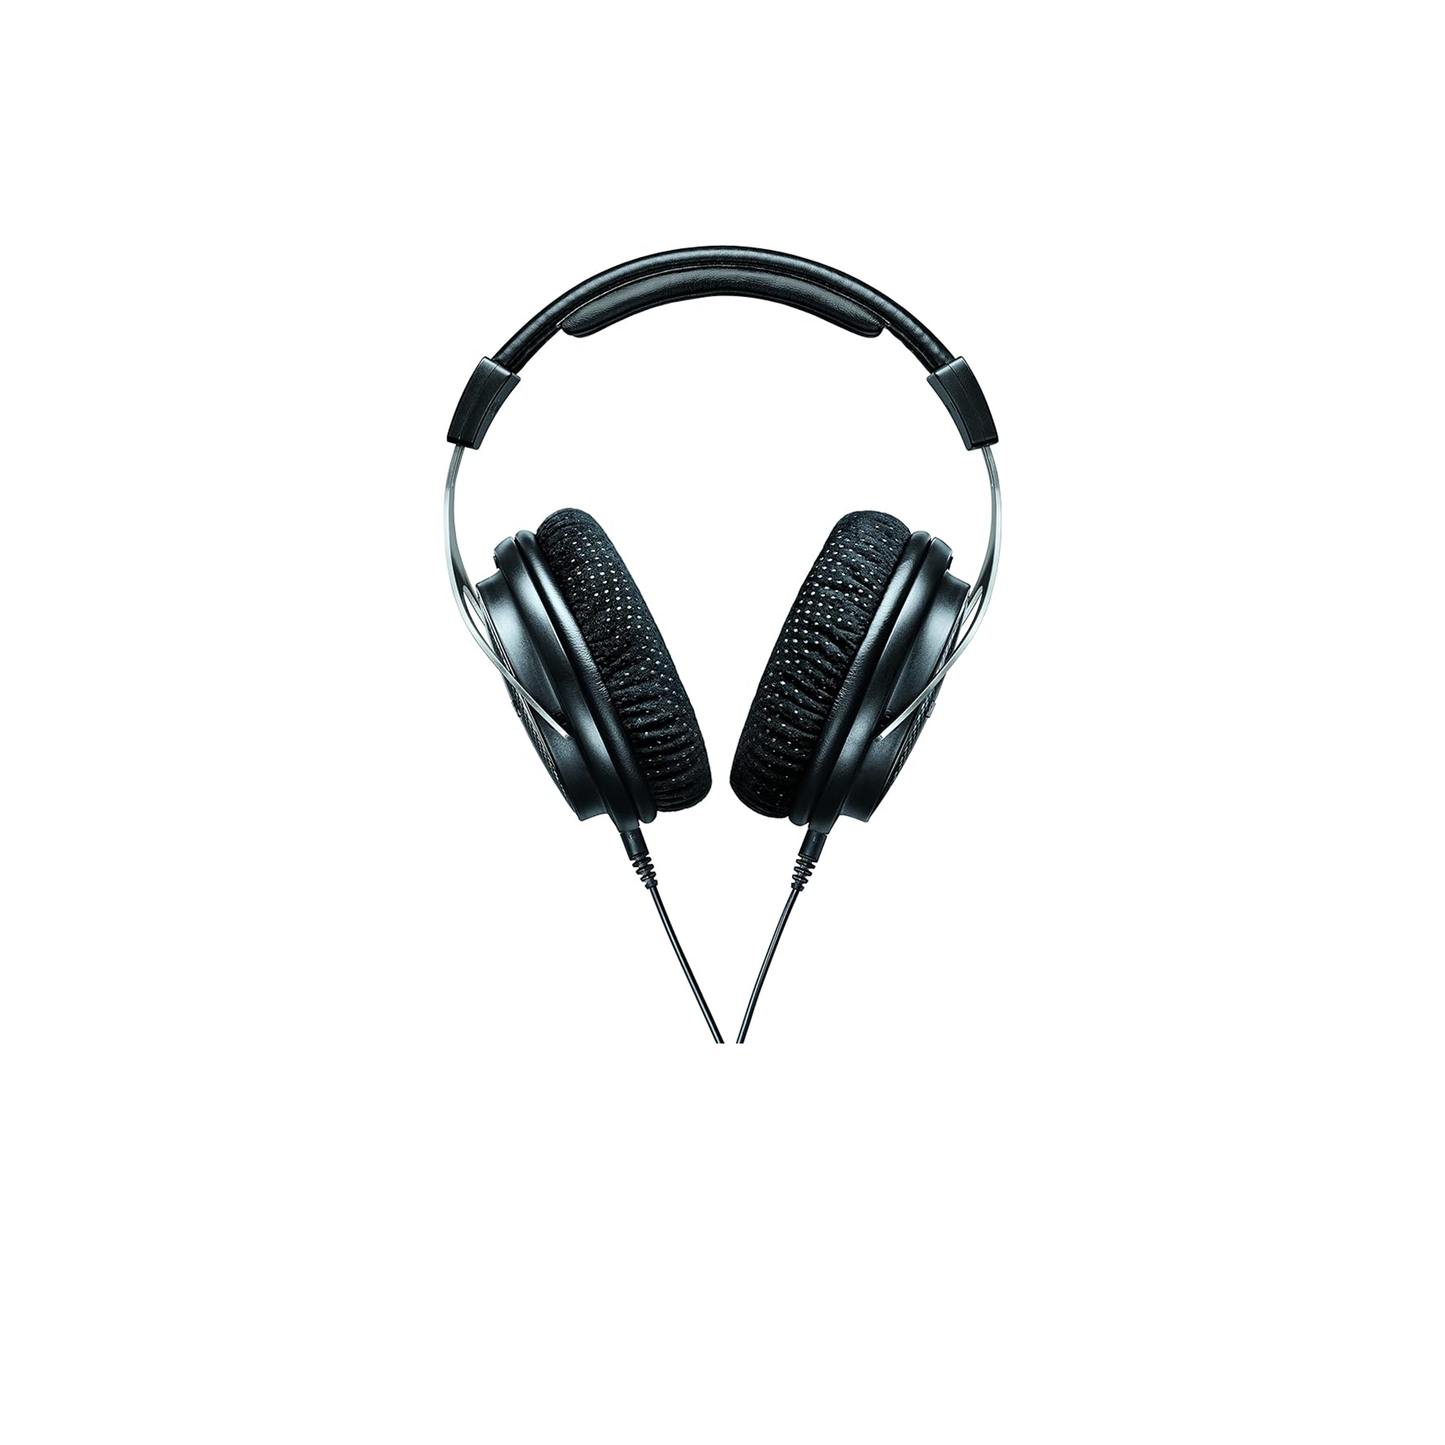 سماعات الرأس Shure SRH1540 المتميزة ذات الظهر المغلق المزودة بمحركات نيوديميوم مقاس 40 مم لارتفاعات واضحة وباس ممتد، مصممة لمهندسي الصوت/الصوت المحترفين والموسيقيين وعشاق الموسيقى (SRH1540-BK) 